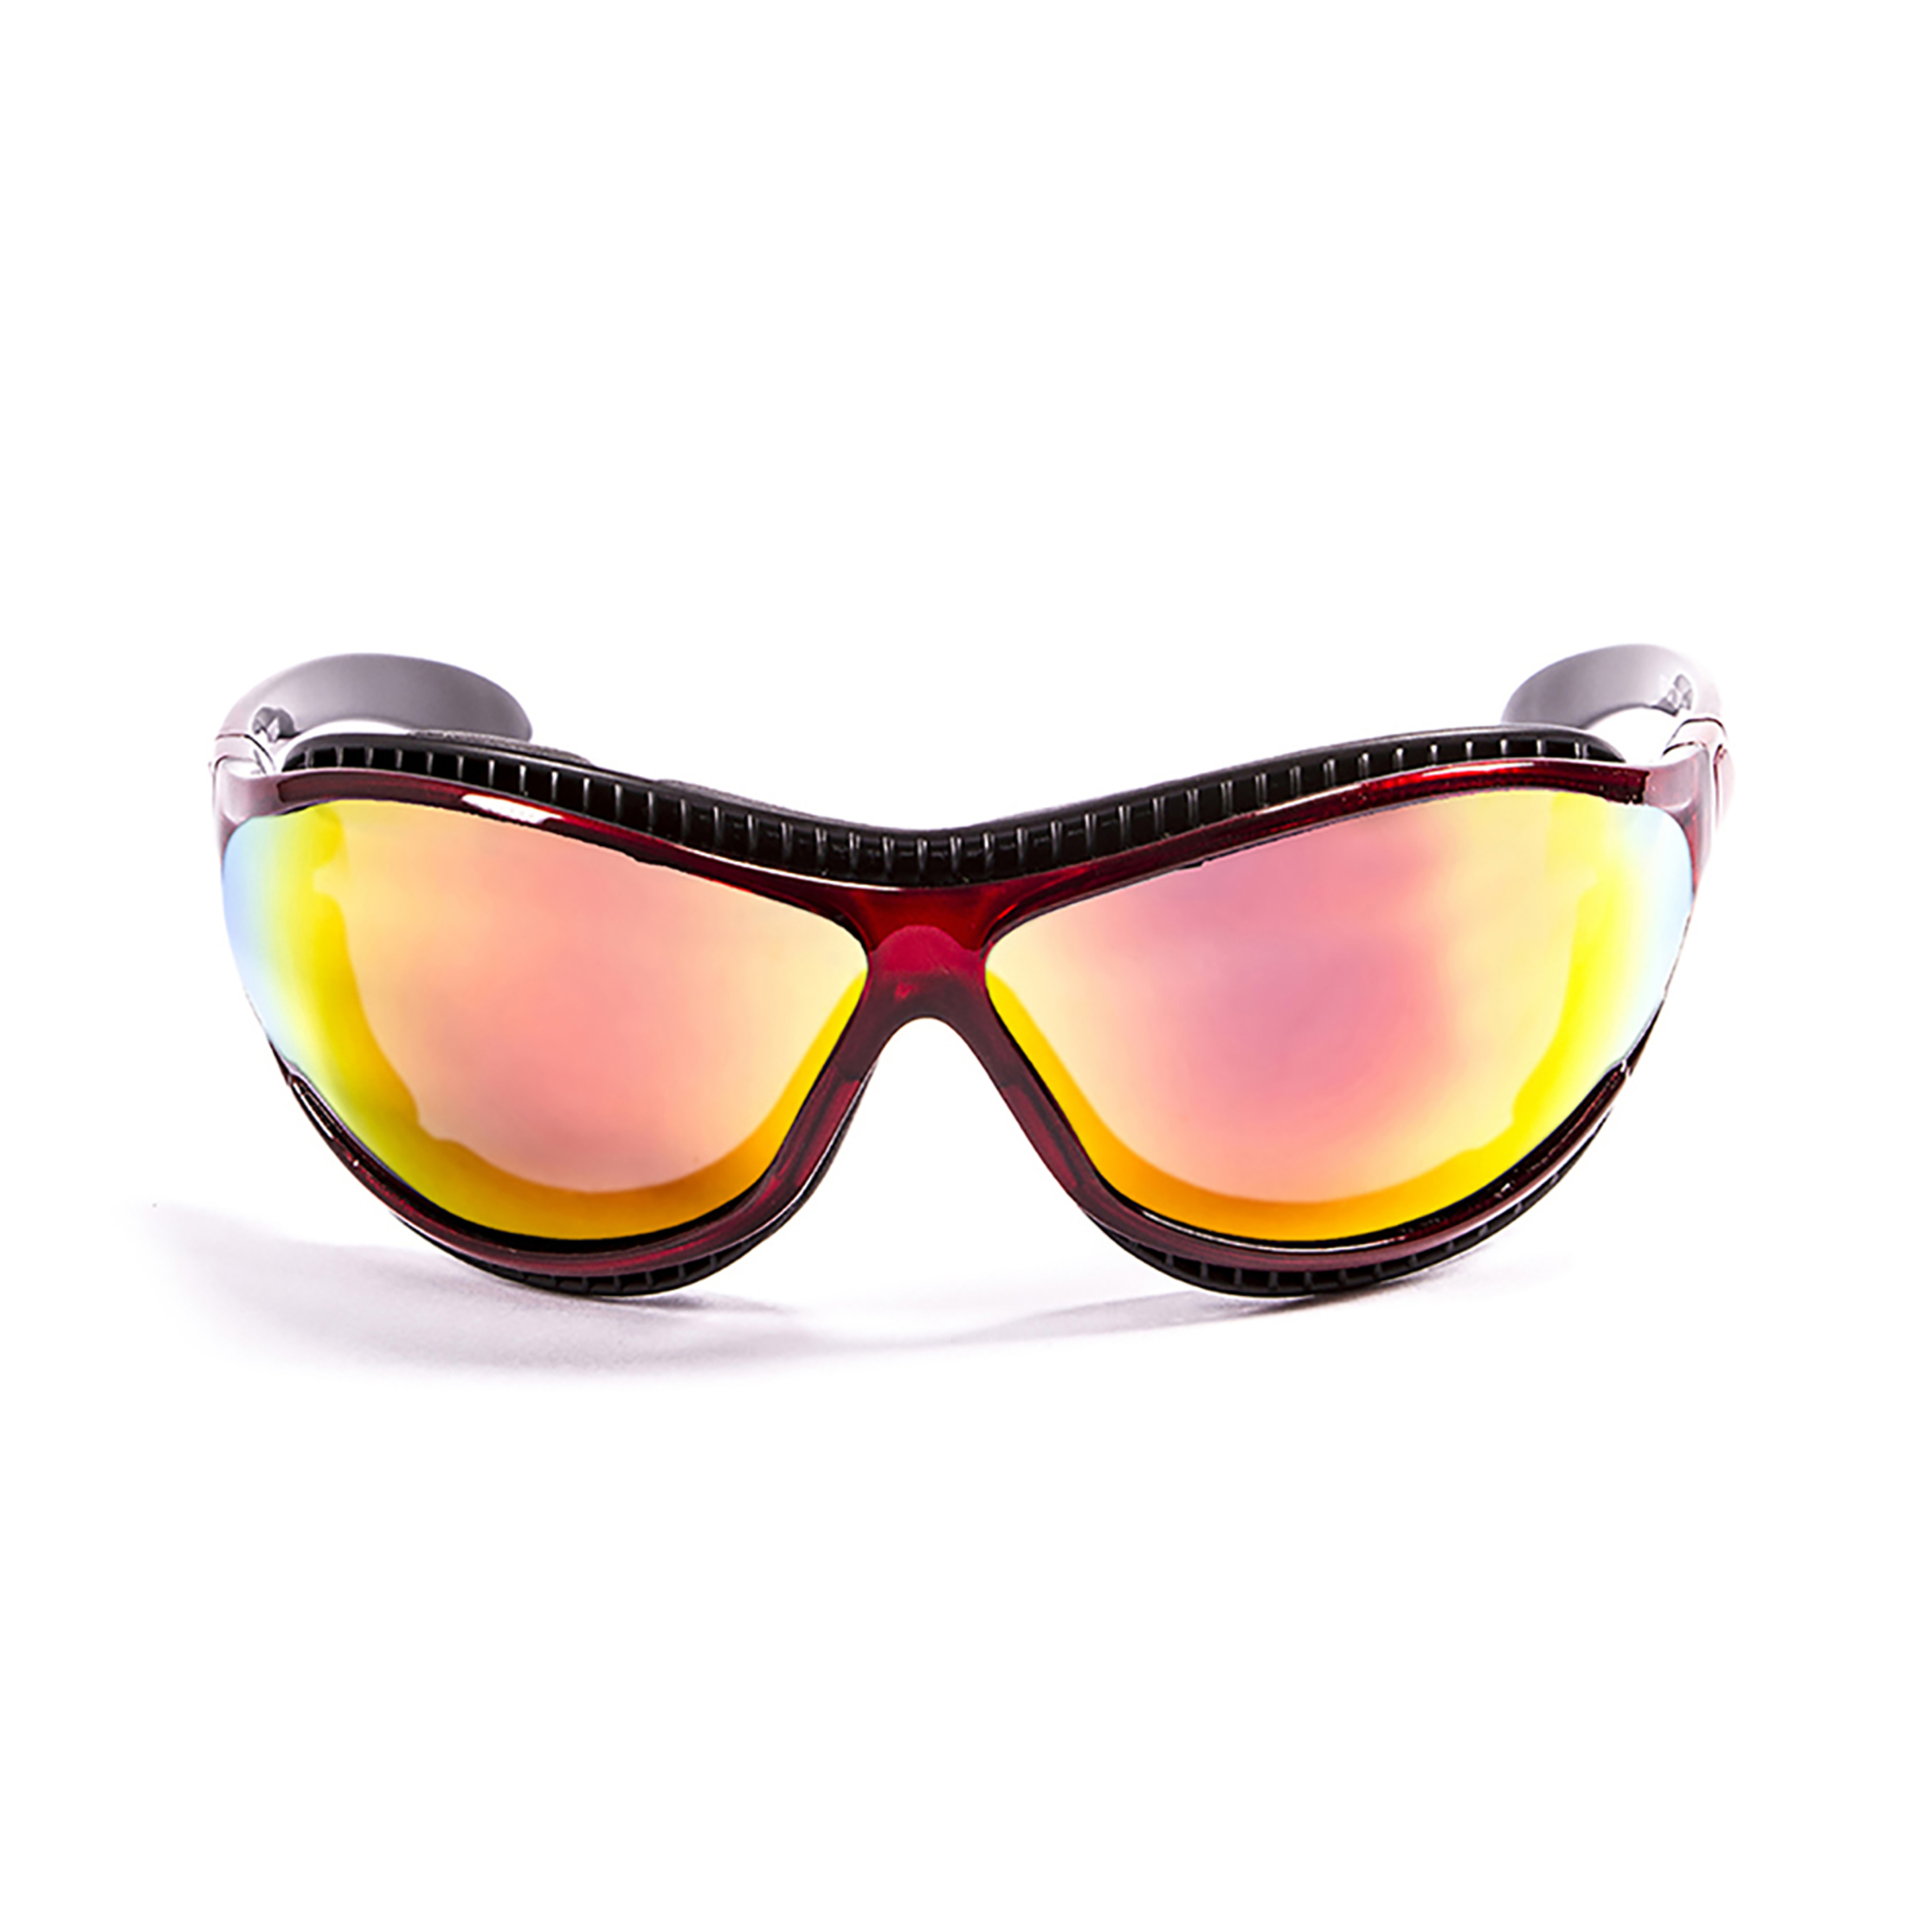 Gafas De Sol Técnicas Para La Práctica De Deportes De Agua Tierra De Fuego Ocean Sunglasses - rojo - 